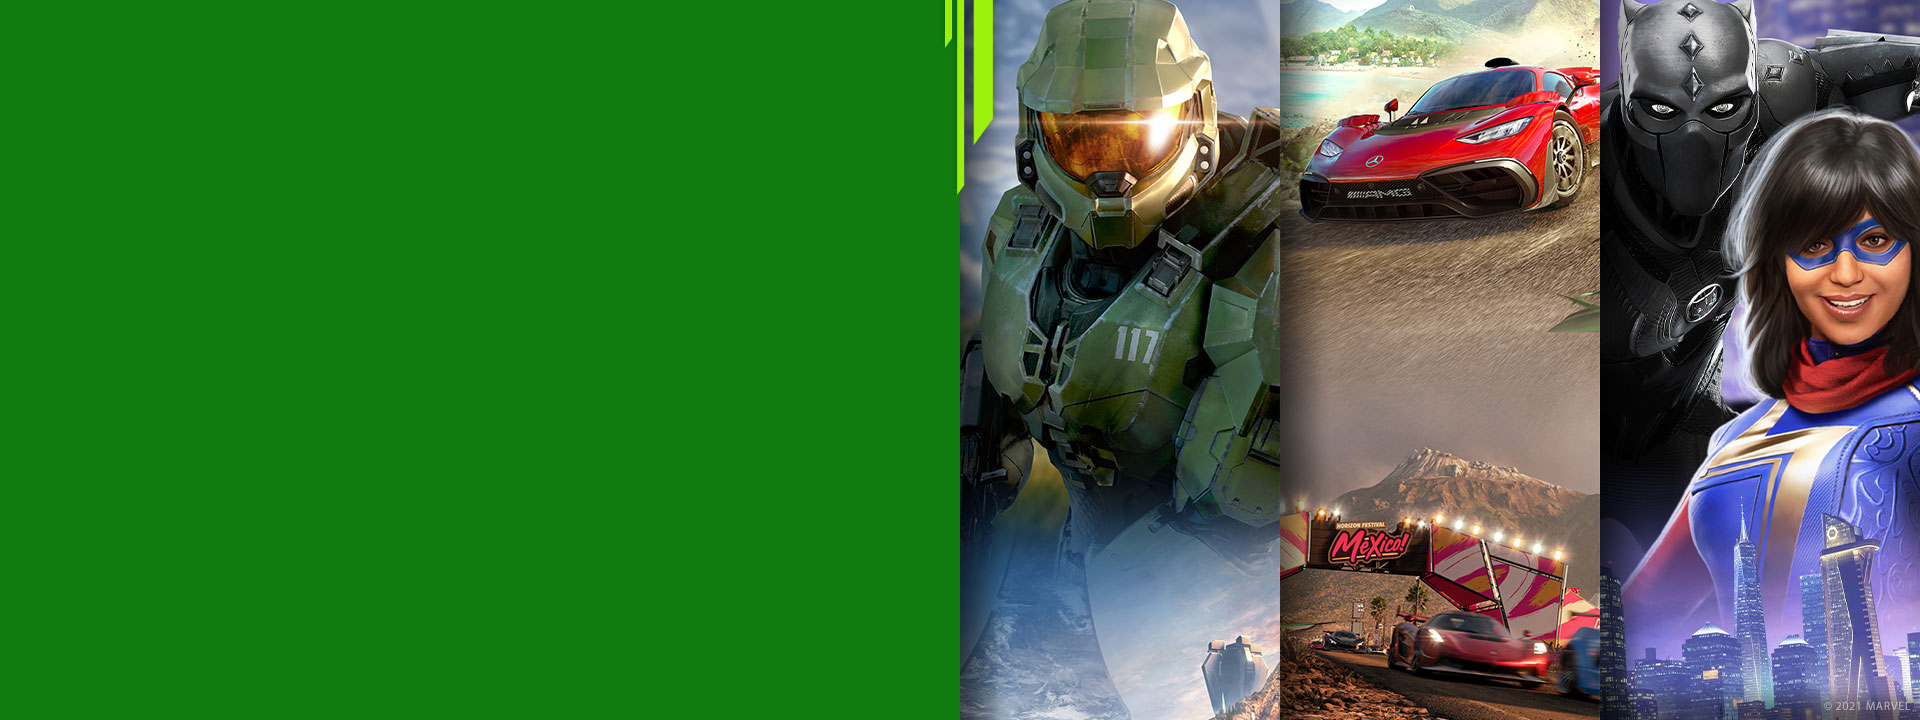 Pohľad spredu na rôzne postavy z hier pre Xbox z hier Halo Infinite, Forza Horizon 5 a Marvel's Avengers.